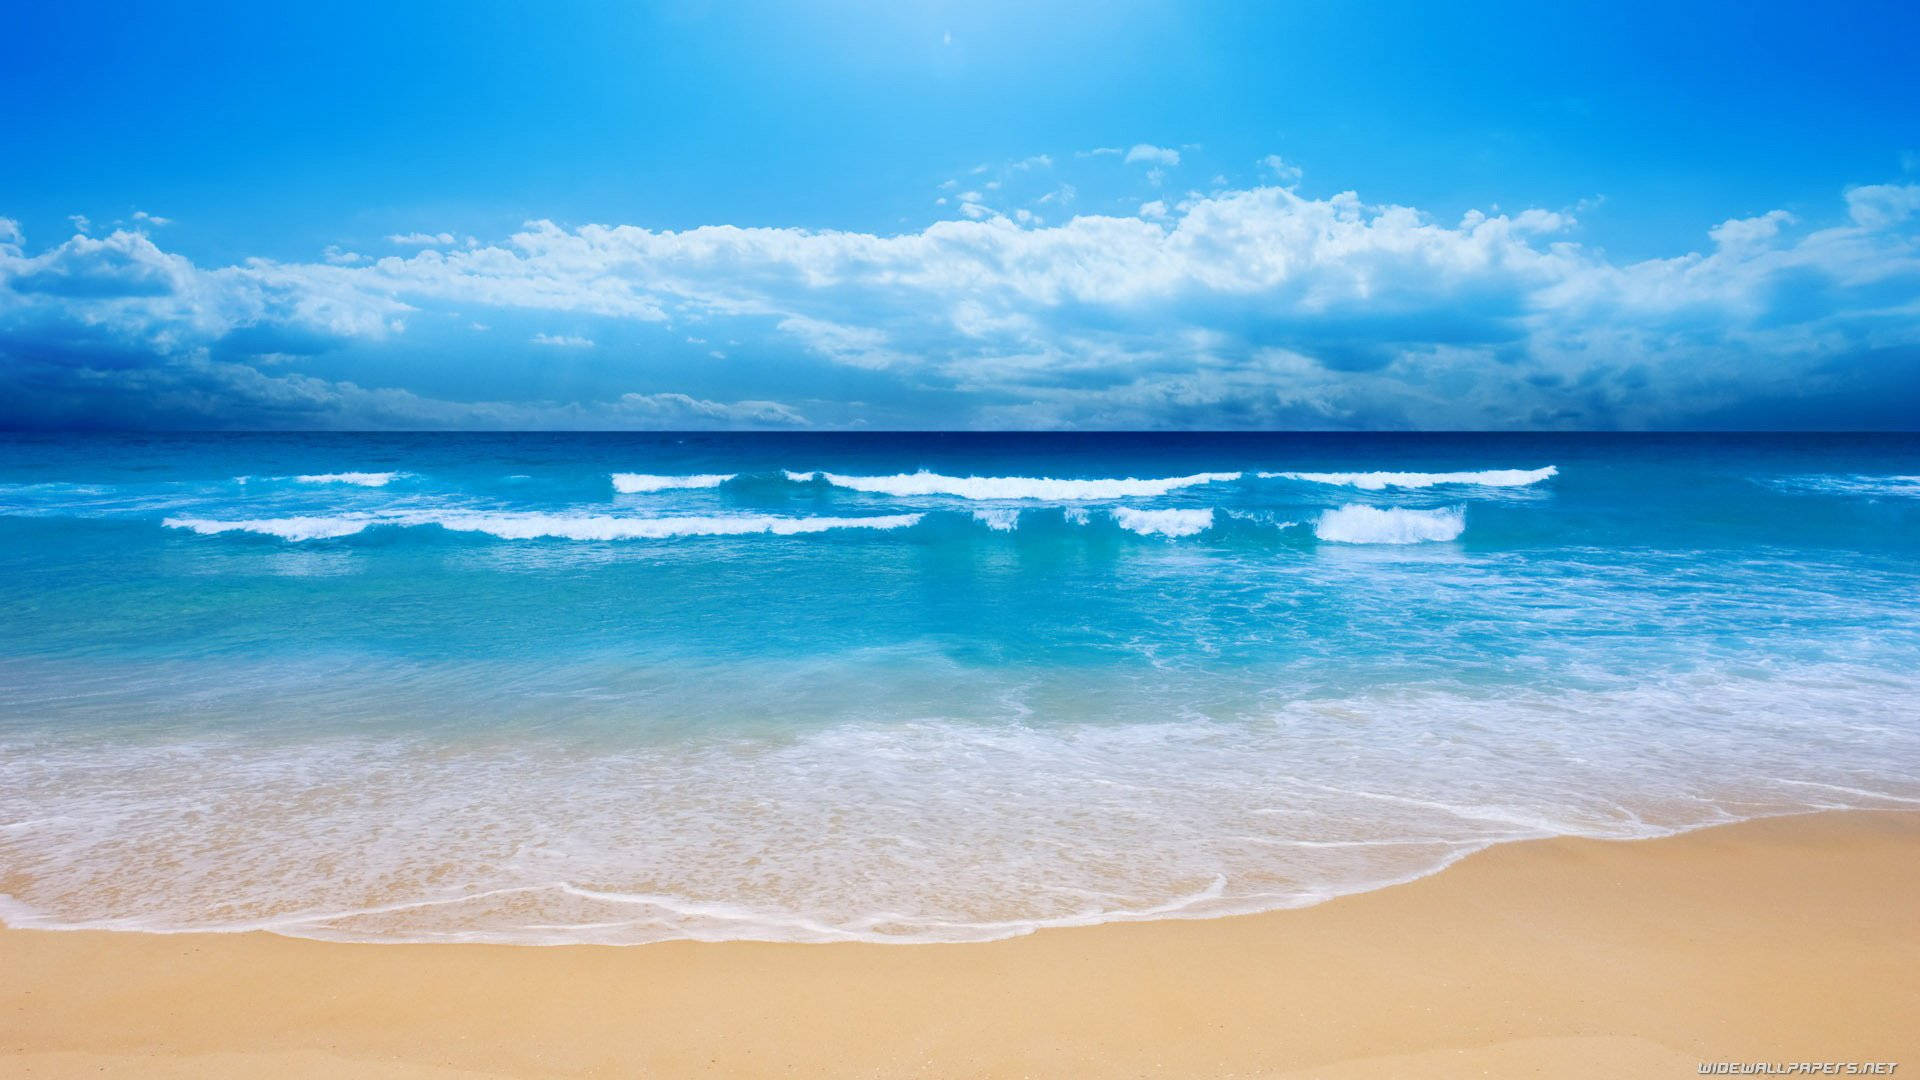 Tận hưởng cảm giác như đang đứng trên bãi biển tuyệt đẹp với những hình ảnh nền bãi biển chân thật và sống động nhất.